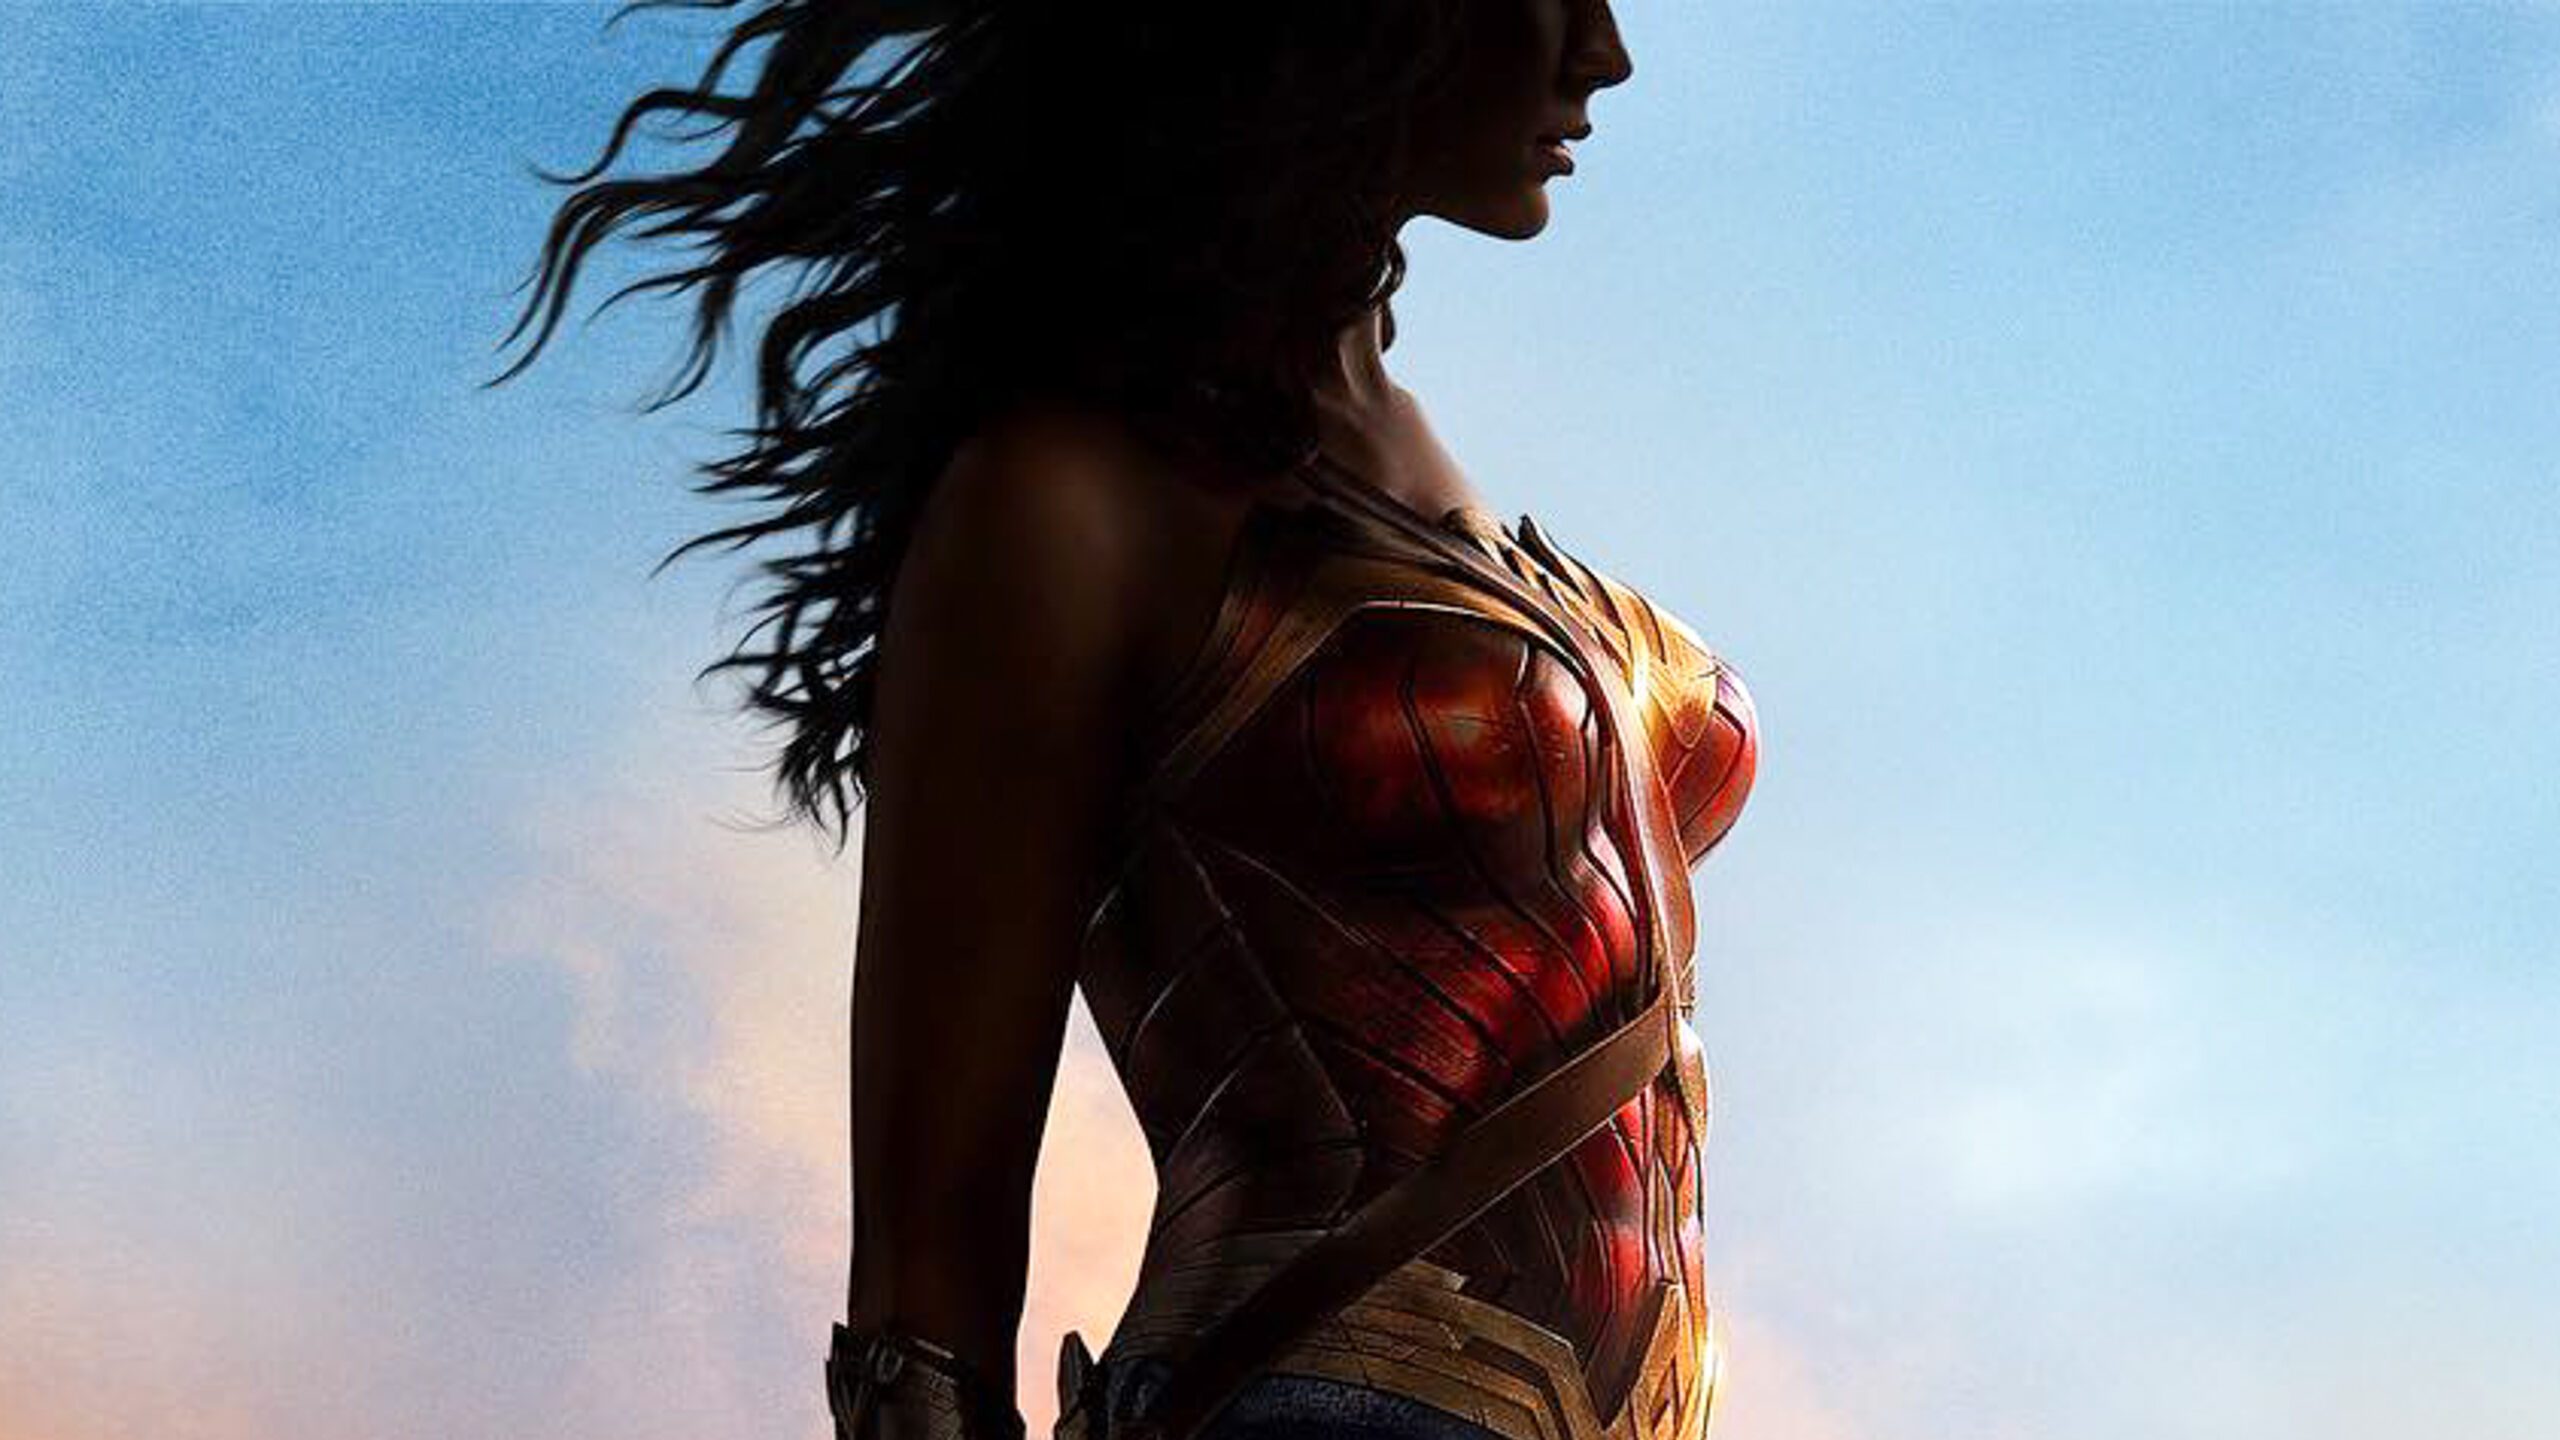 LOOK: Gal Gadot shares first ‘Wonder Woman’ poster